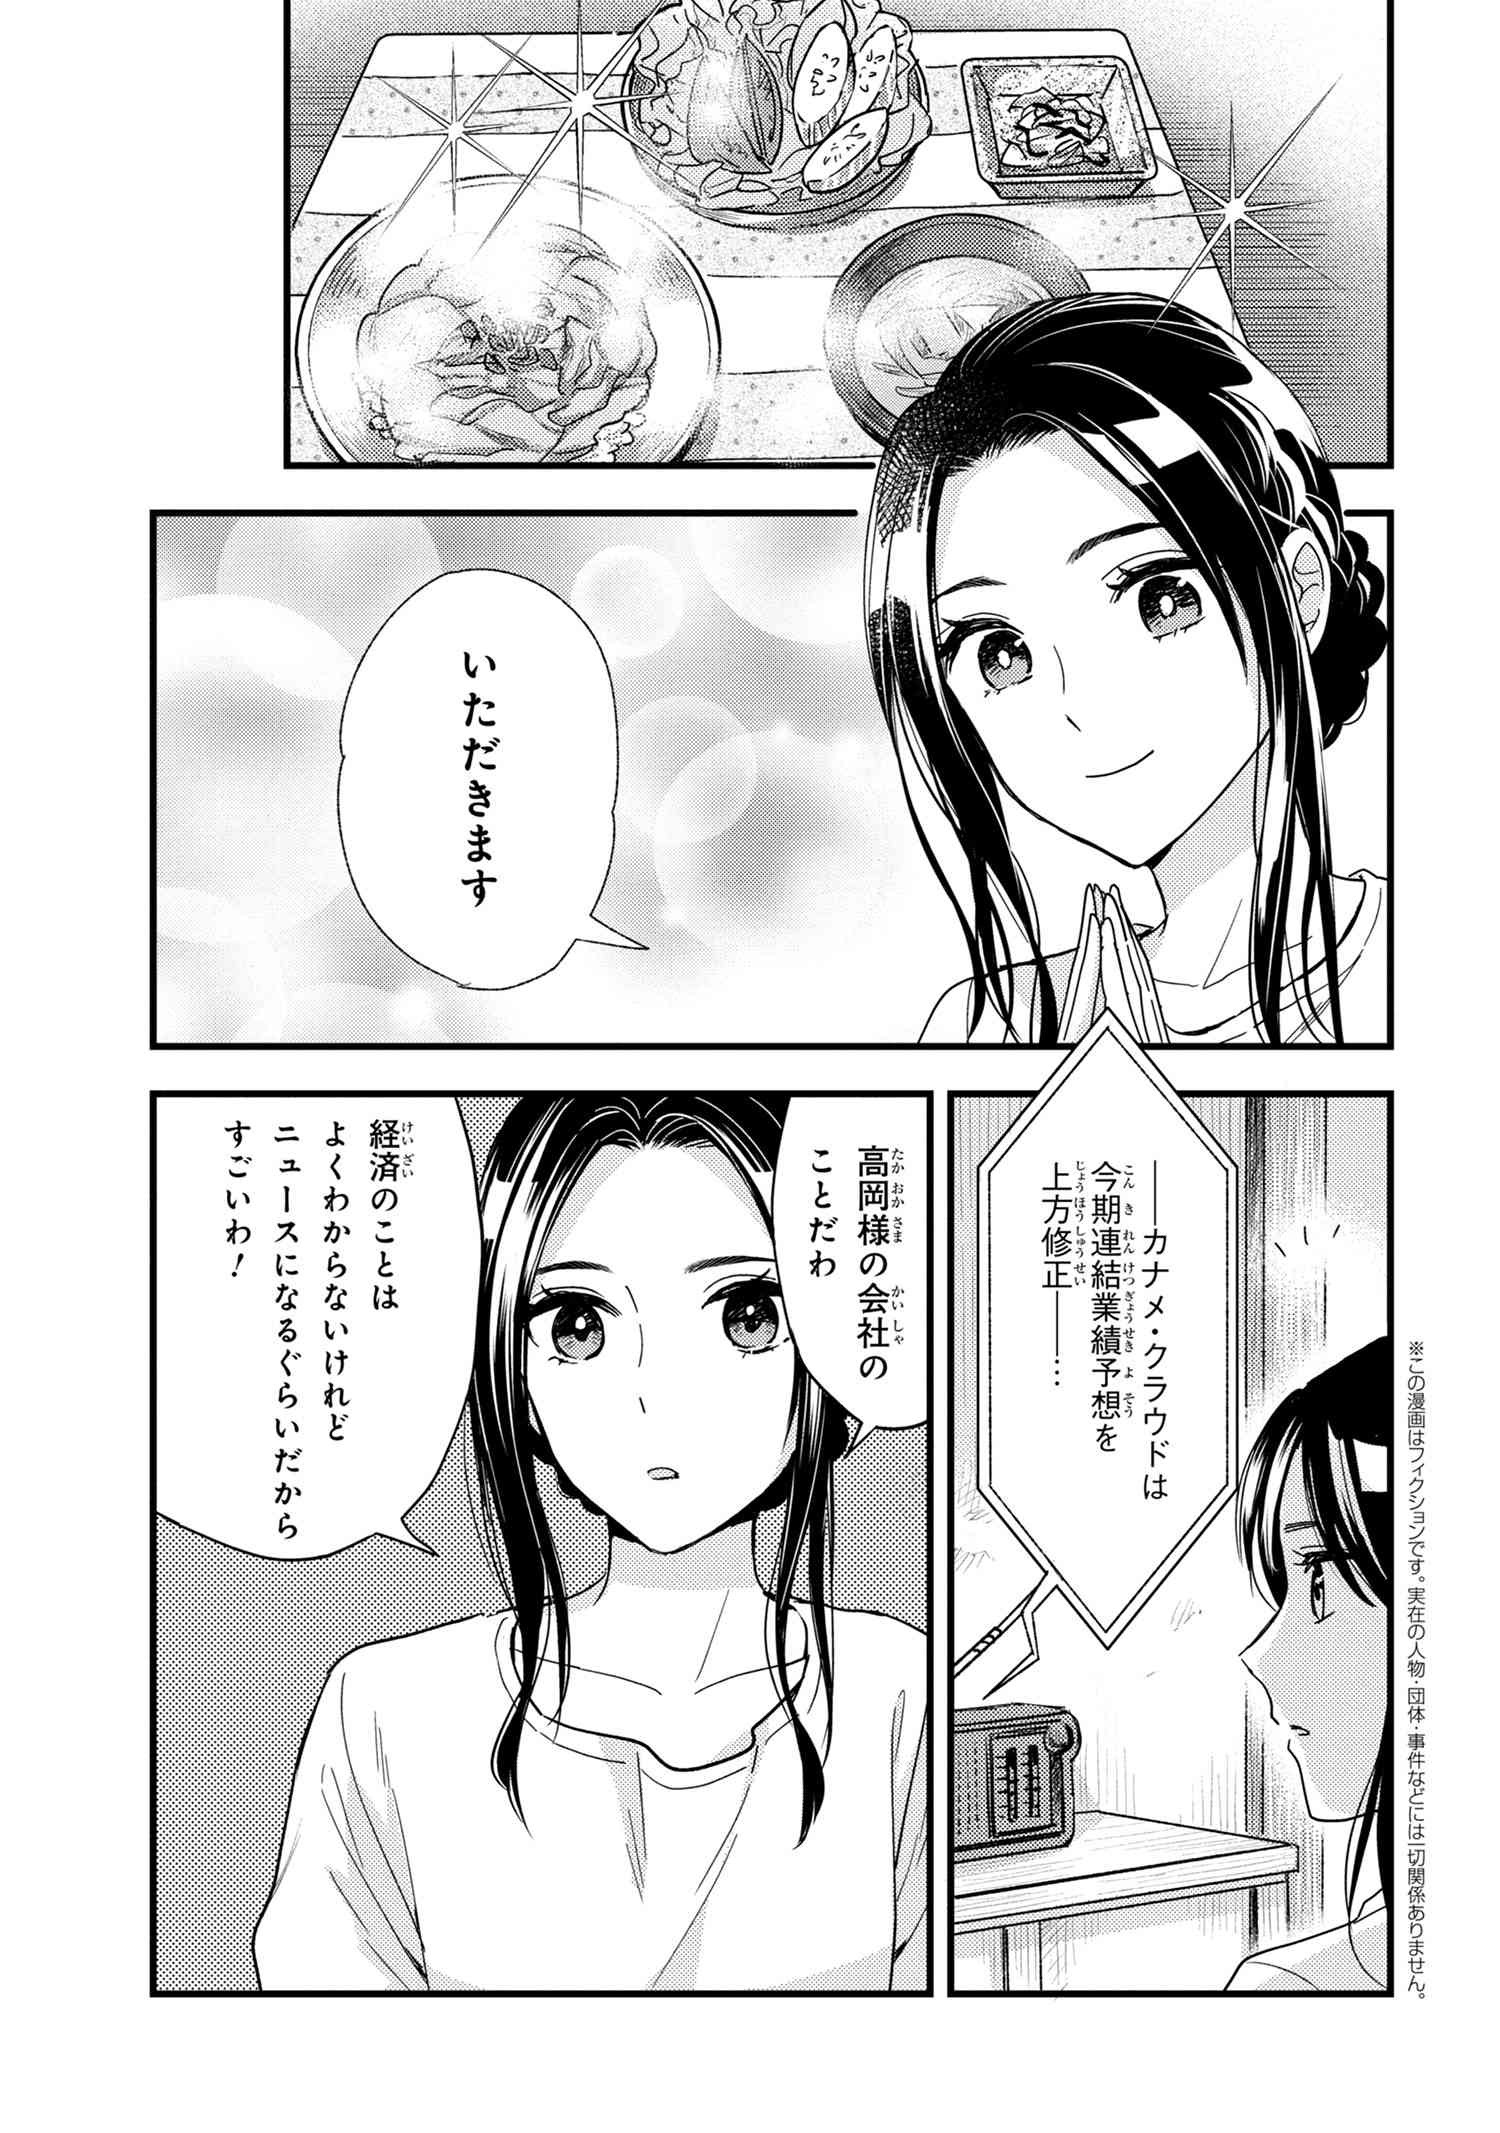 Reiko no Fuugi Akuyaku Reijou to Yobarete imasu ga, tada no Binbou Musume desu - Chapter 15-4 - Page 1